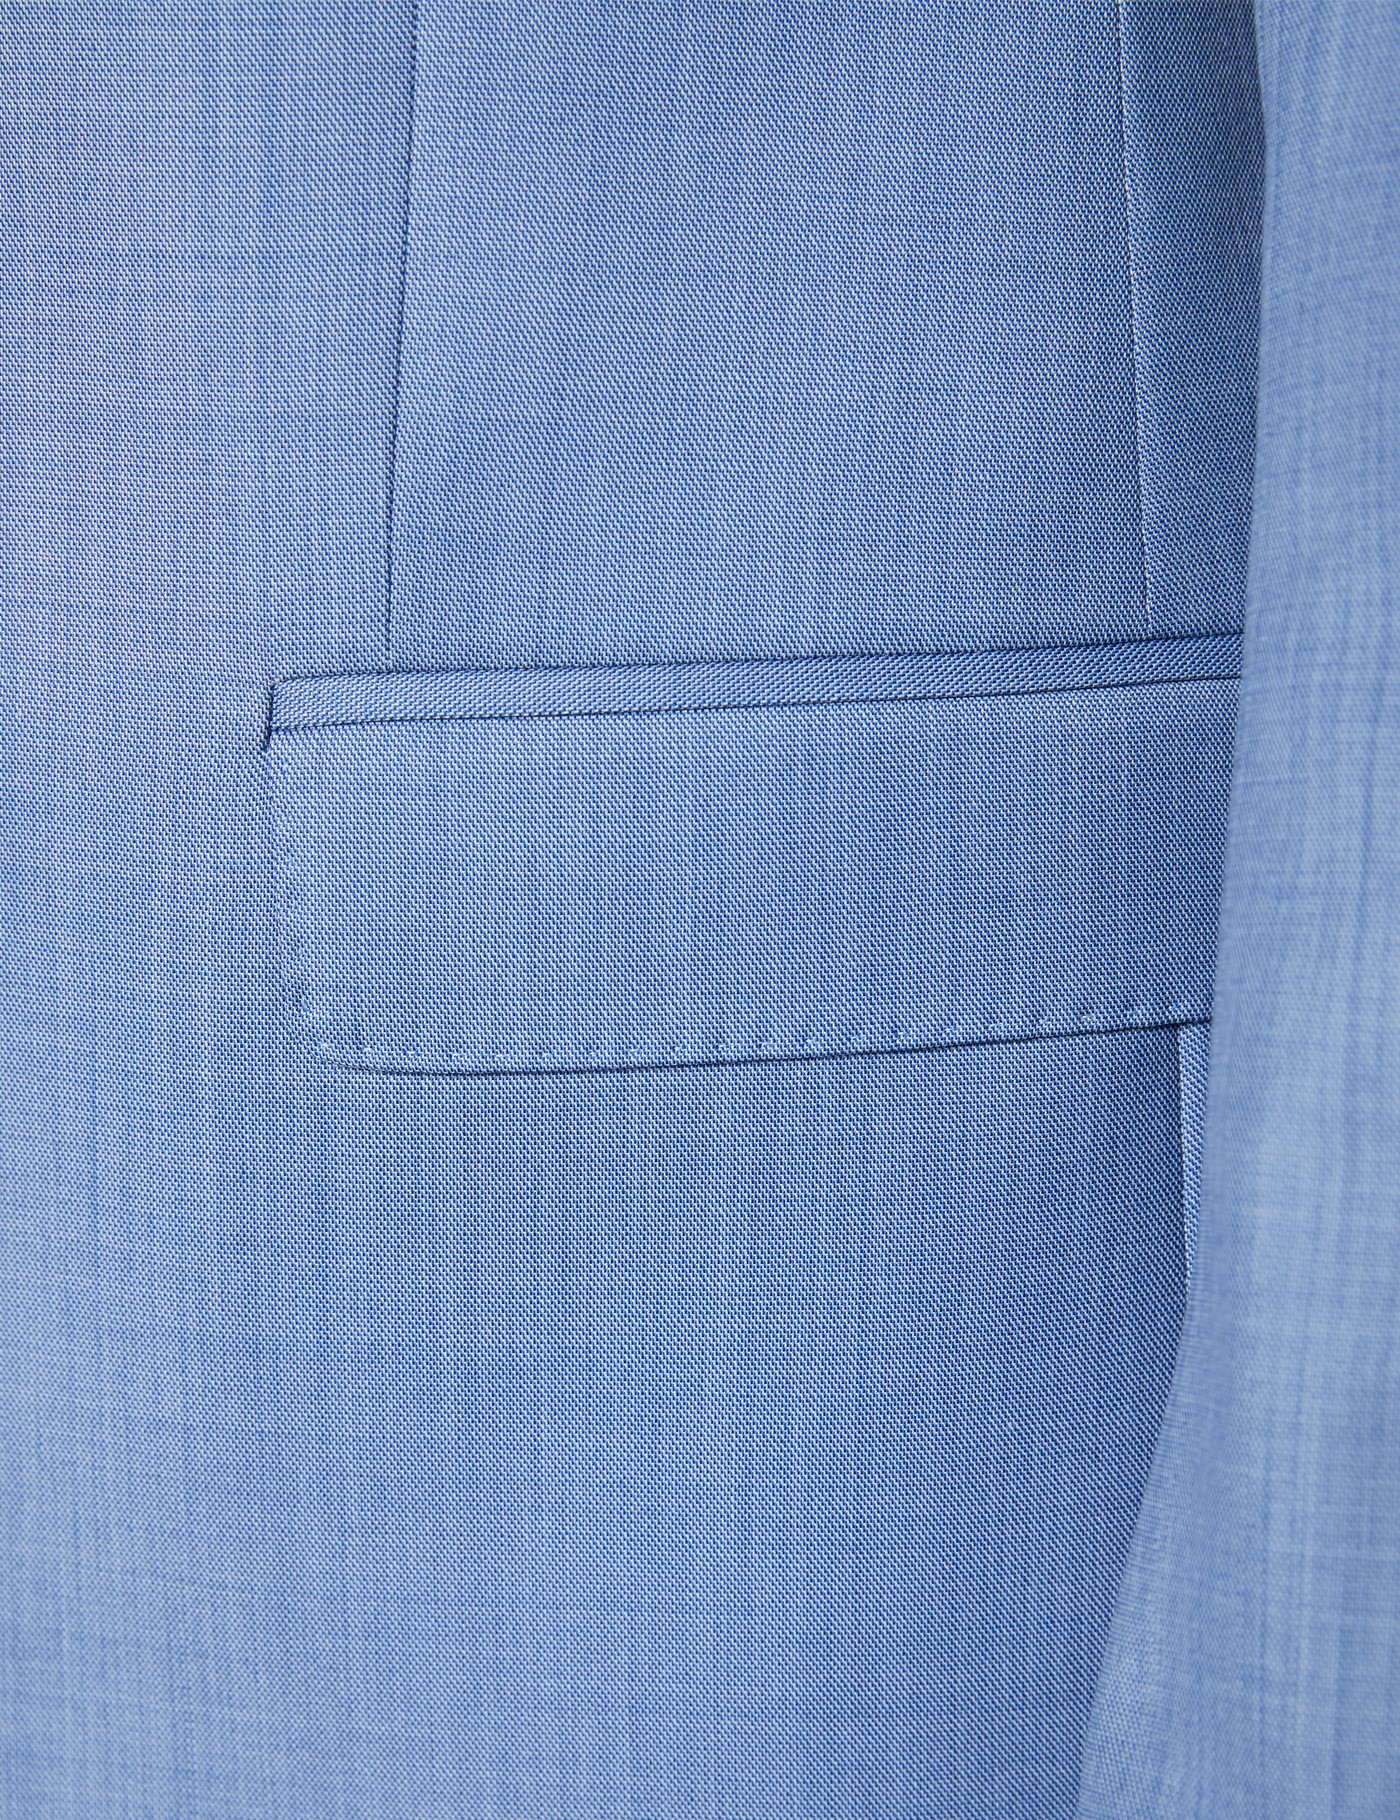 Men's Light Blue Slim Fit Italian Suit Jacket – 1913 Collection | Hawes ...